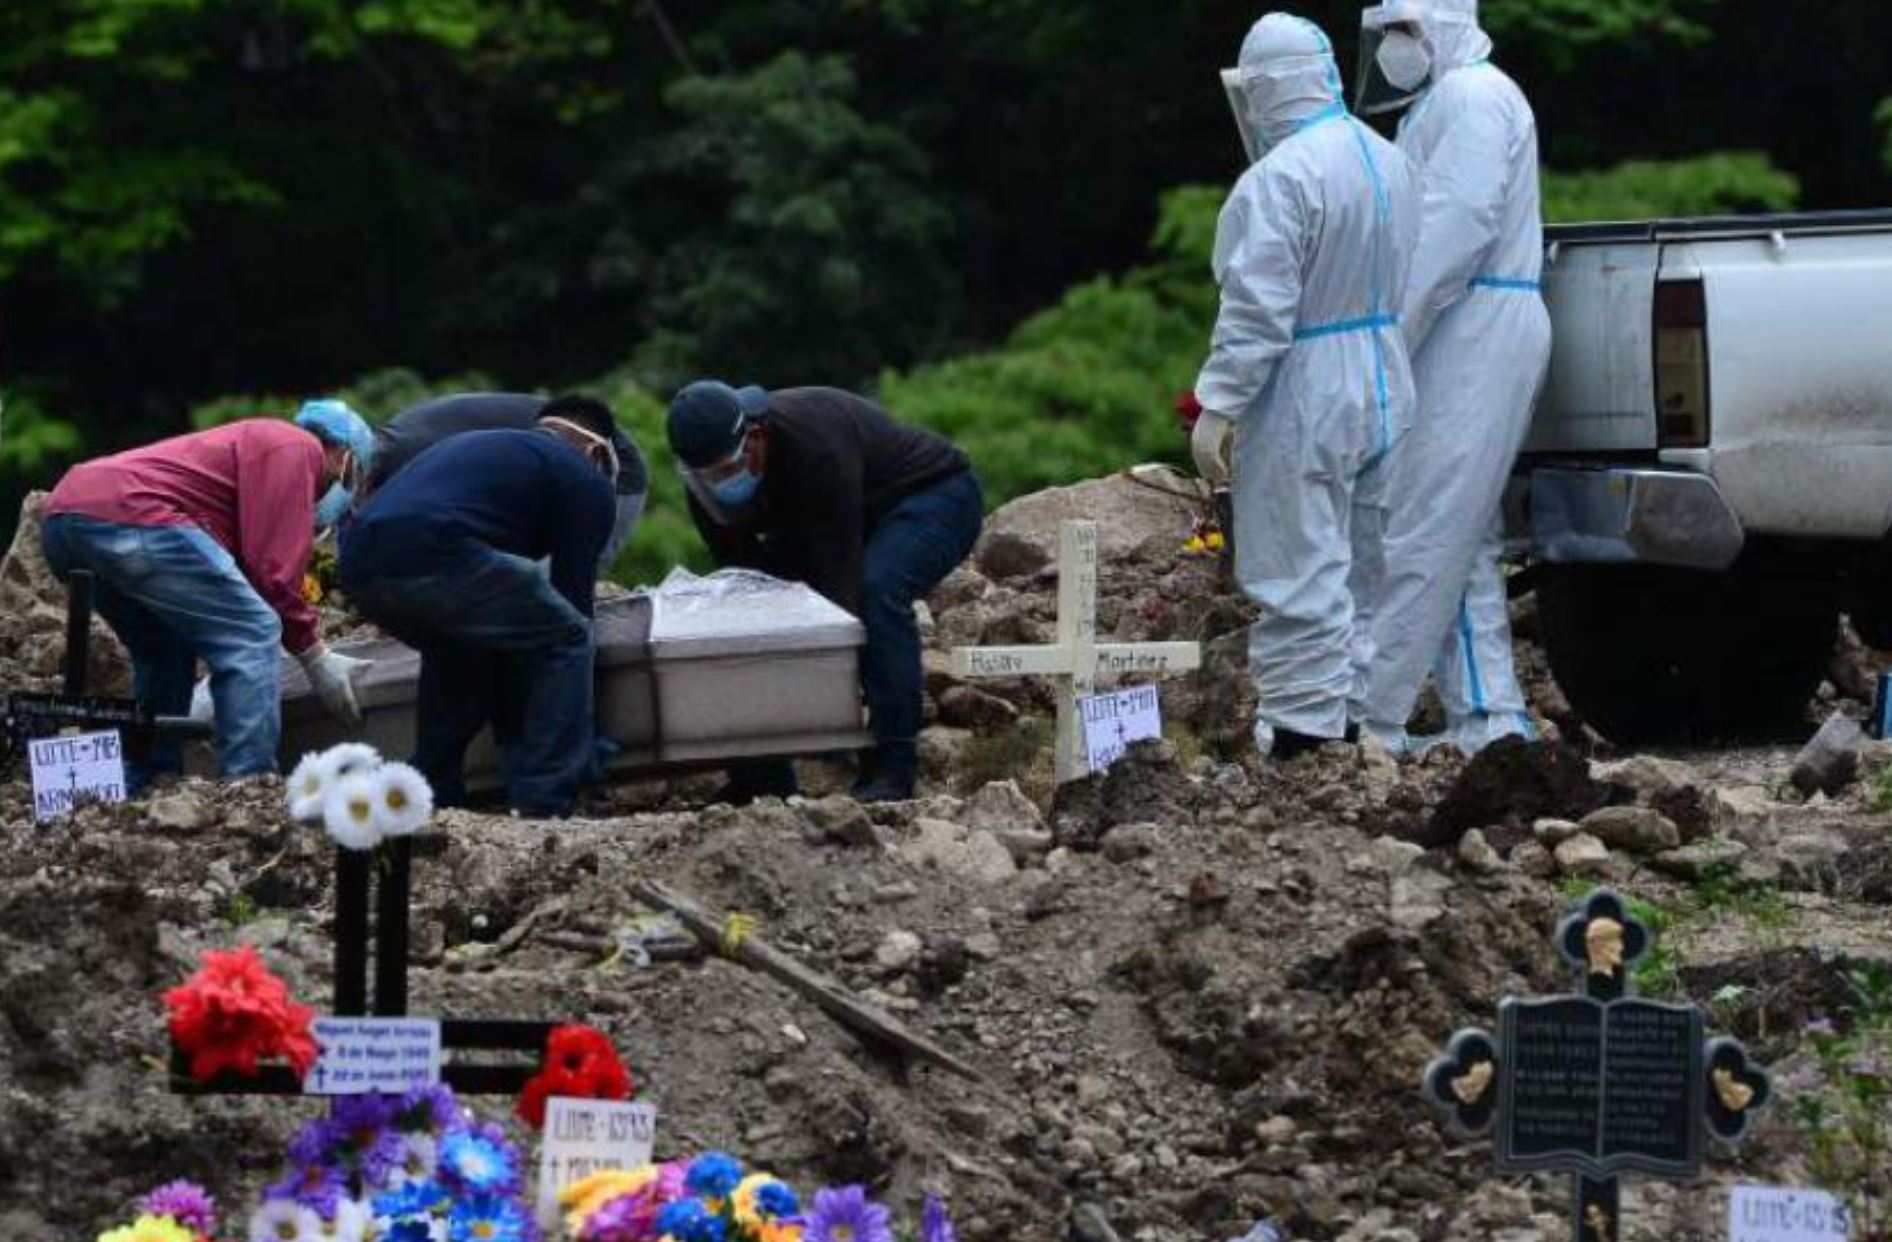 Al menos 40 muertes por Covid-19 dejó julio, 24 más que junio, reportan funerarias